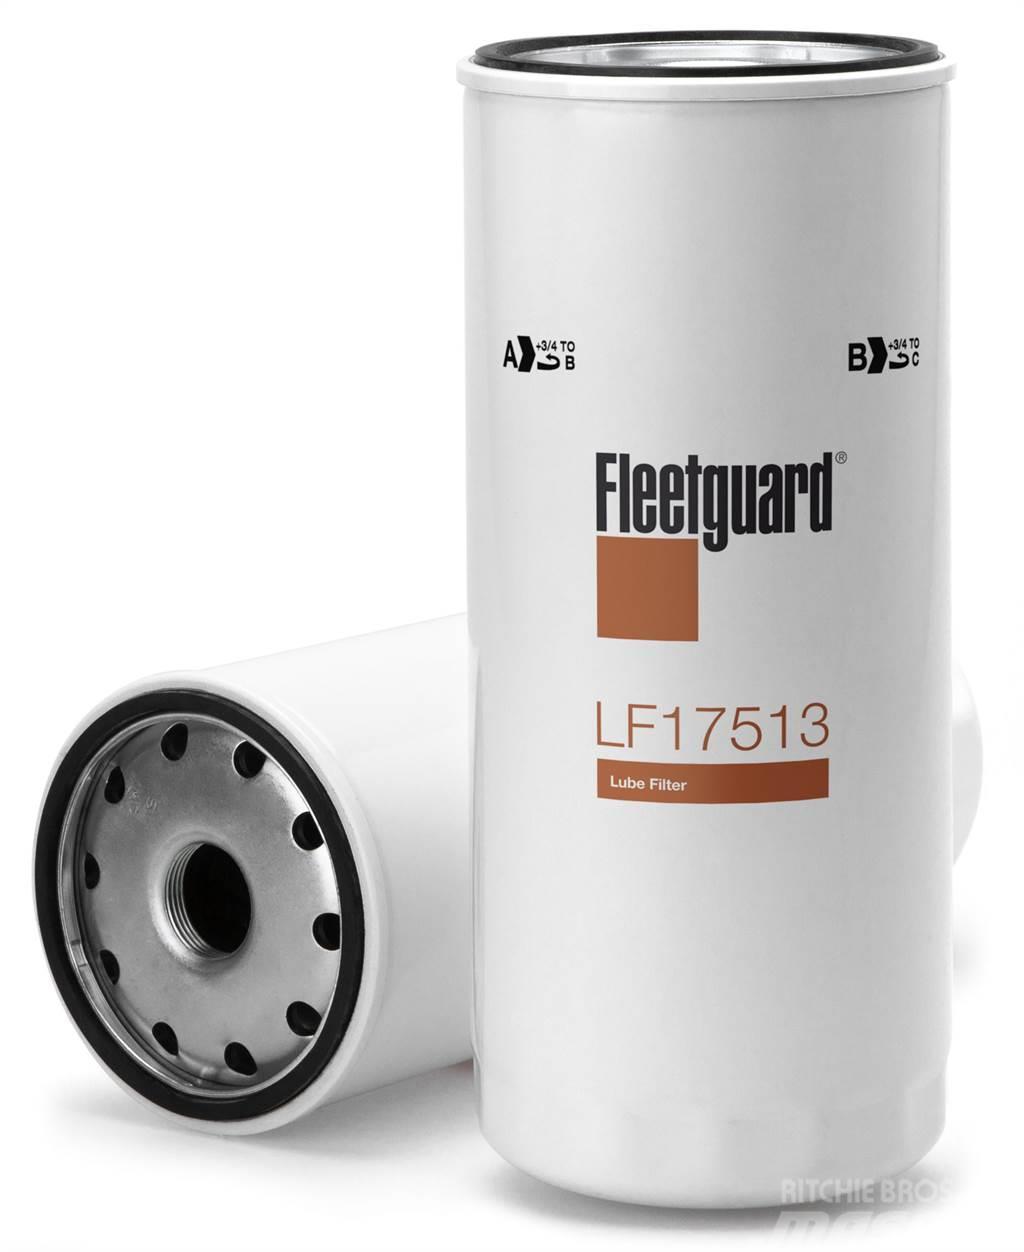 Fleetguard oliefilter LF17513 Ostalo